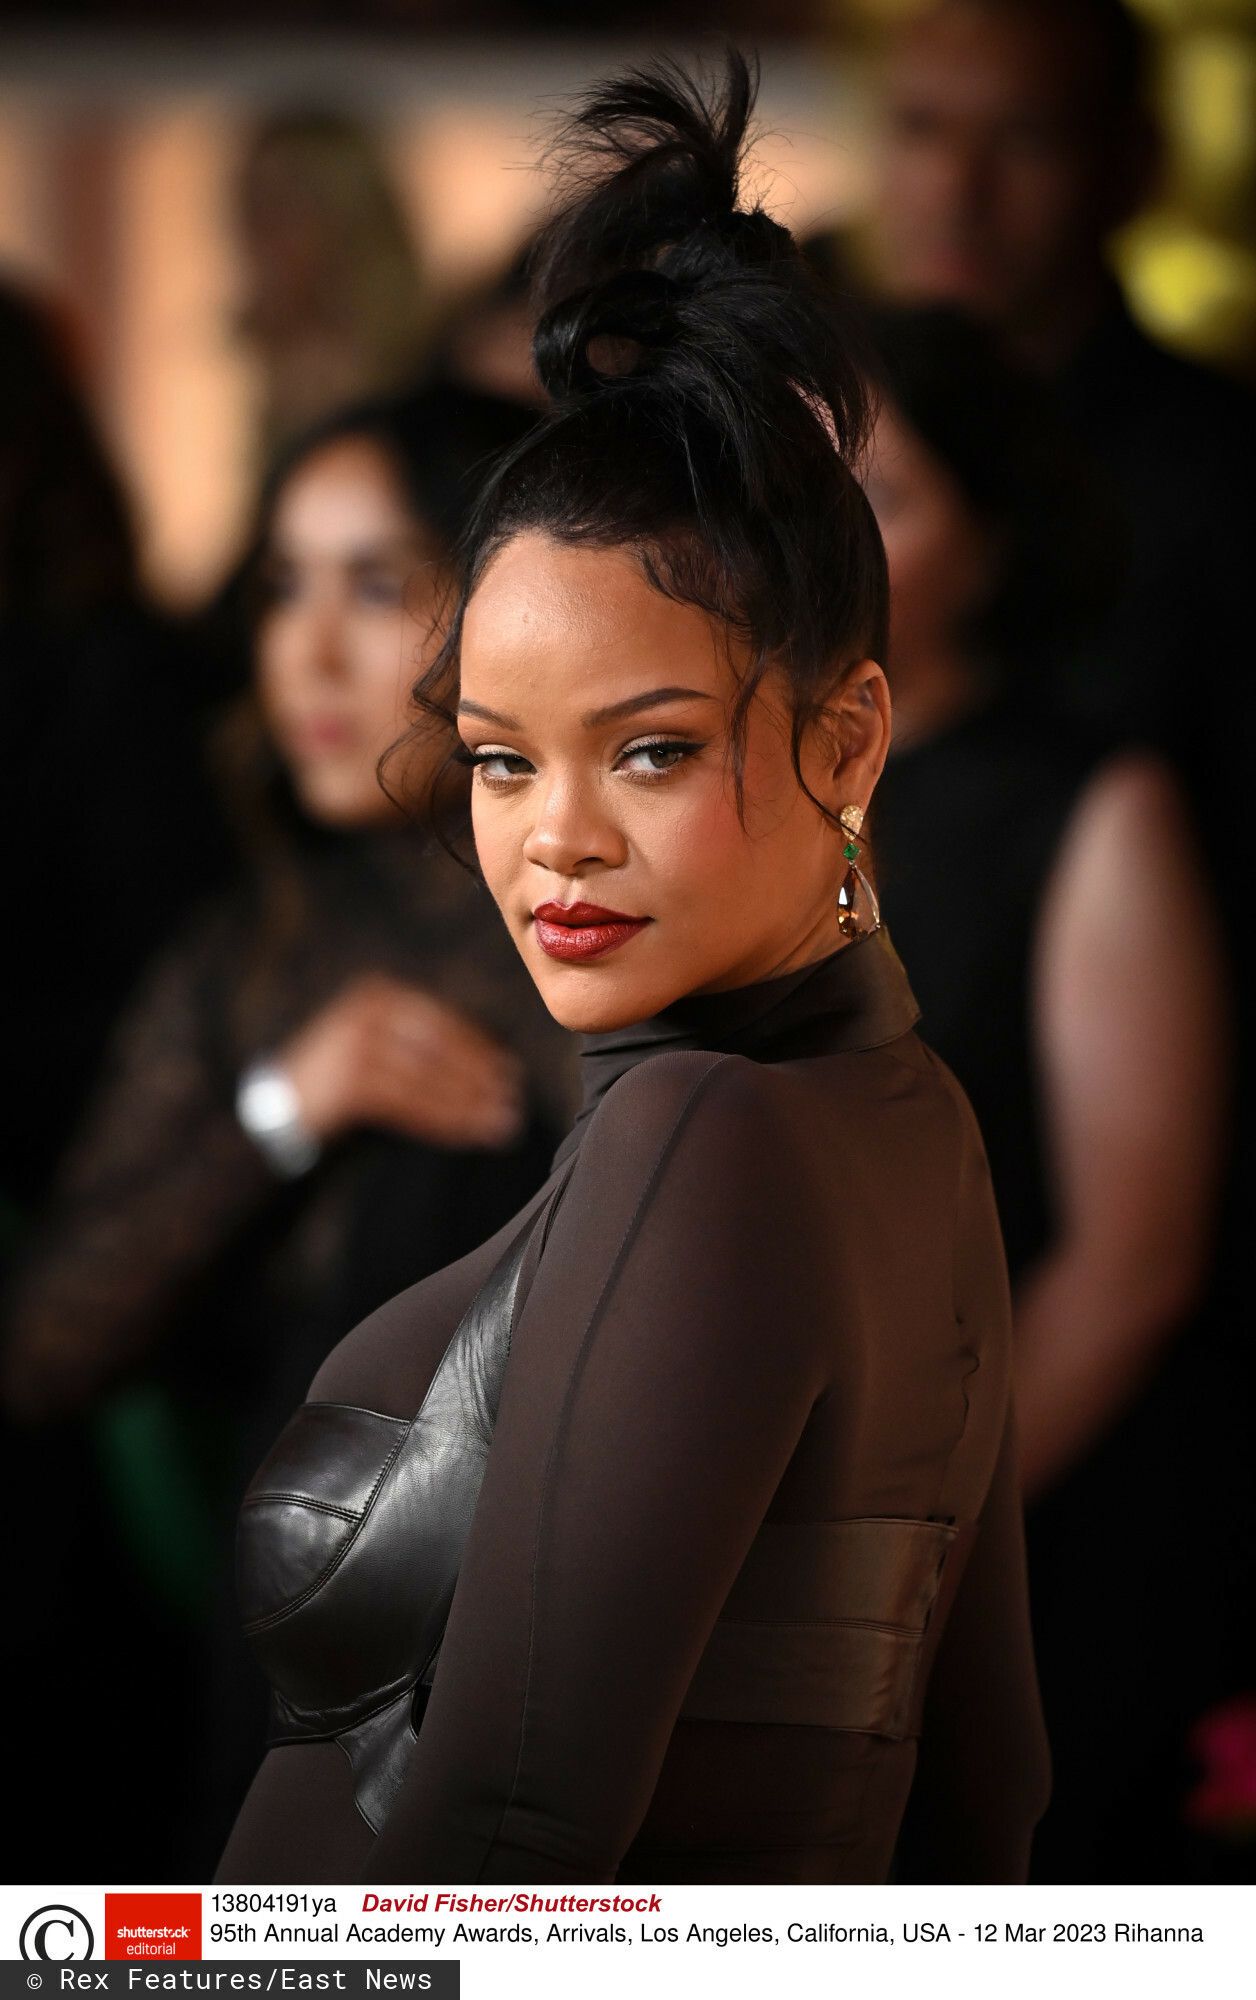 Rihanna jako zakonnica, zdjęcia, afera i reakcje, wywiad Interview Magazine